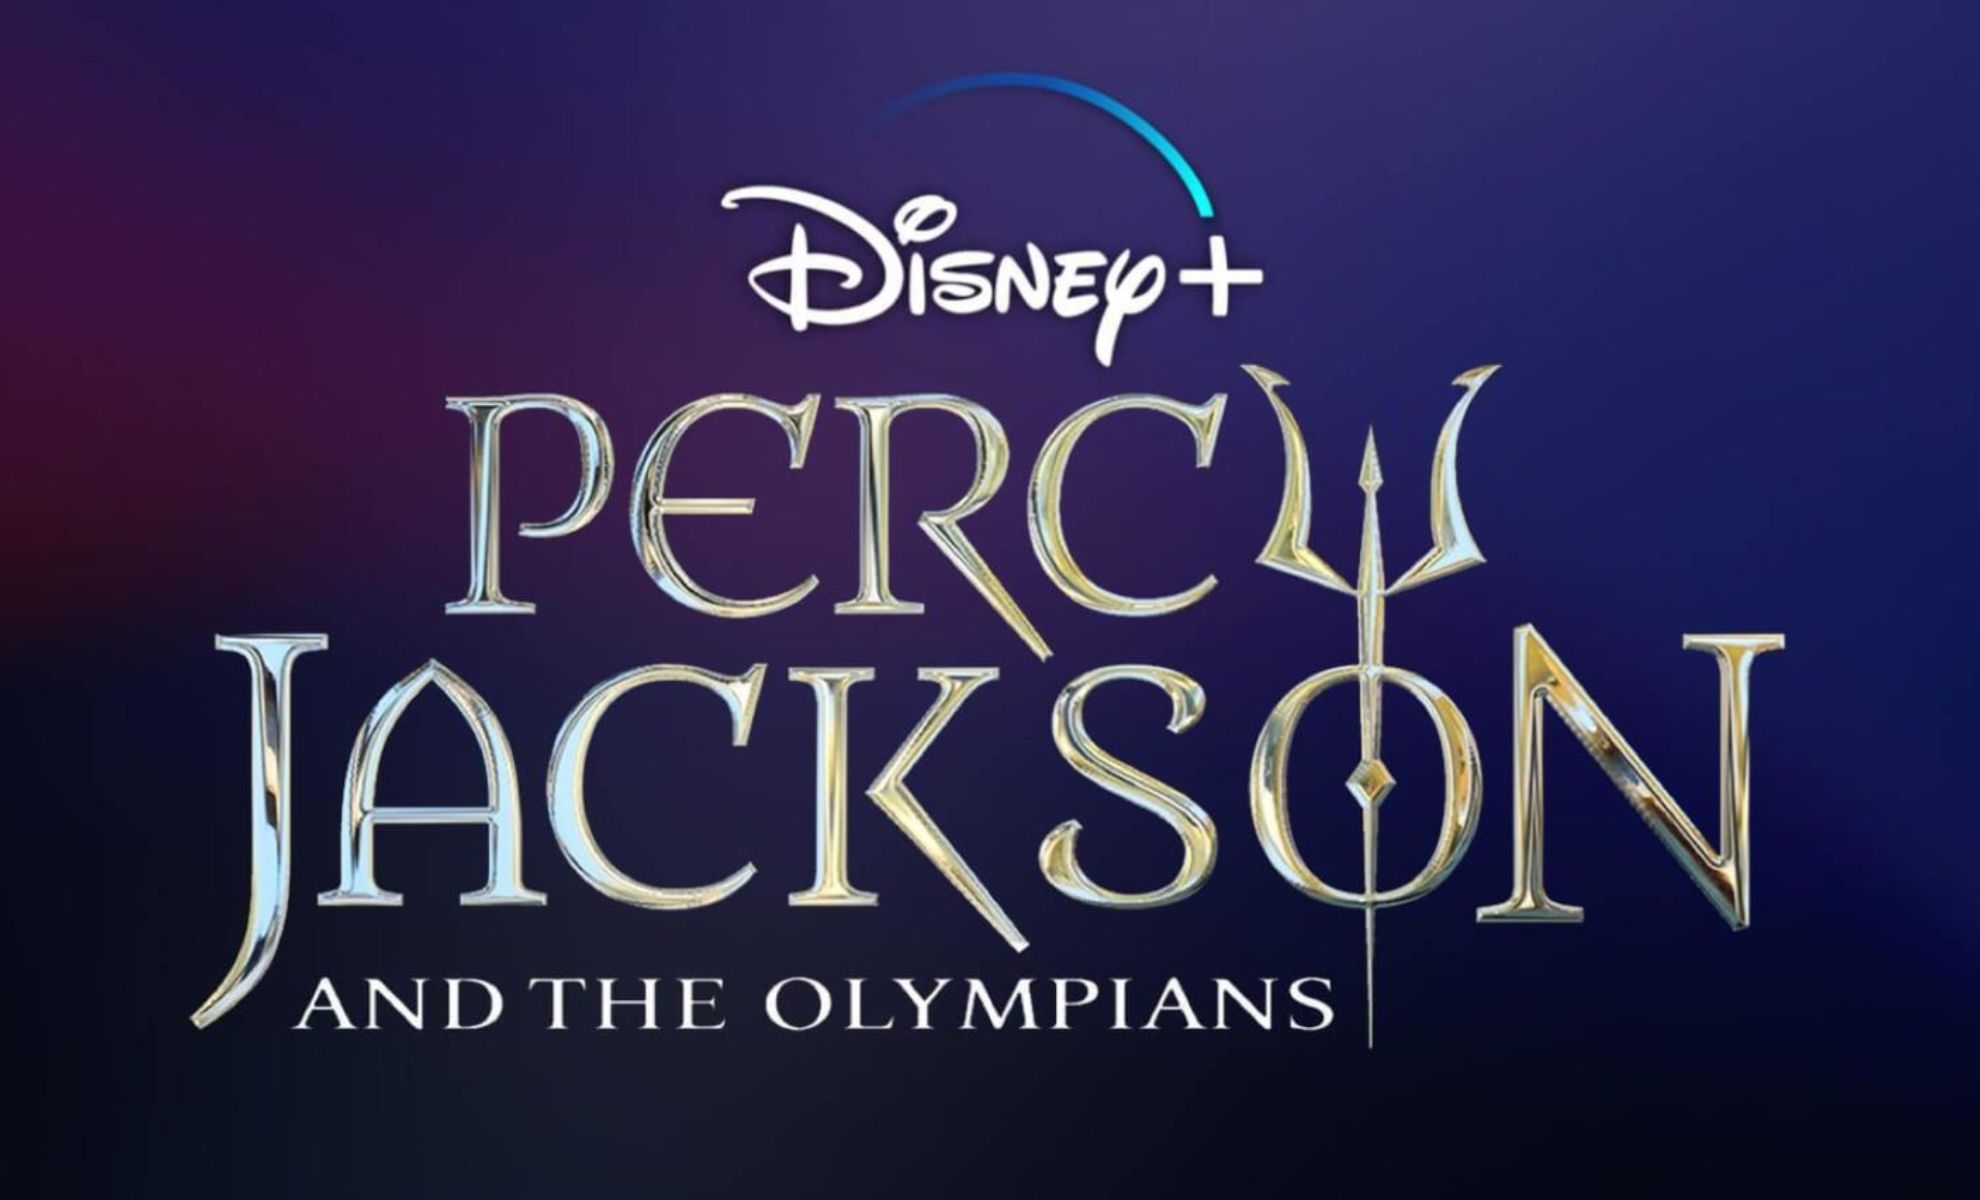 Percy Jackson la nouvelle série évènement Disney+ !